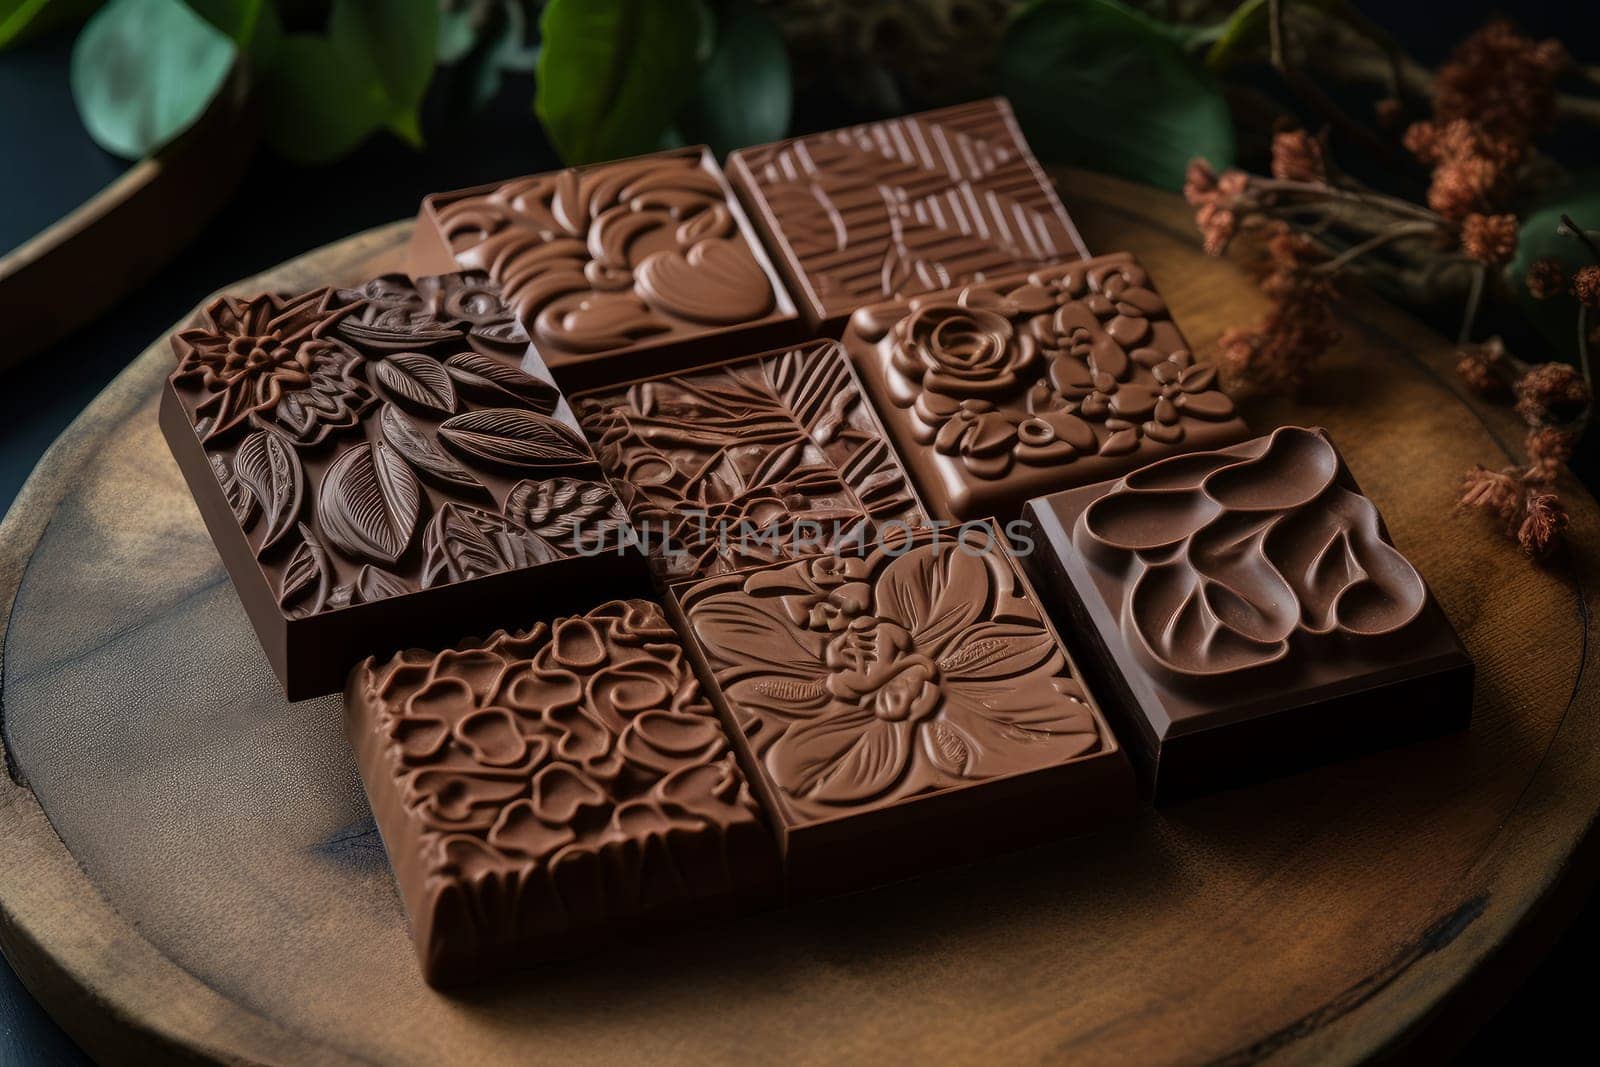 Sustanable Handmade vegan chocolate. Generate Ai by ylivdesign